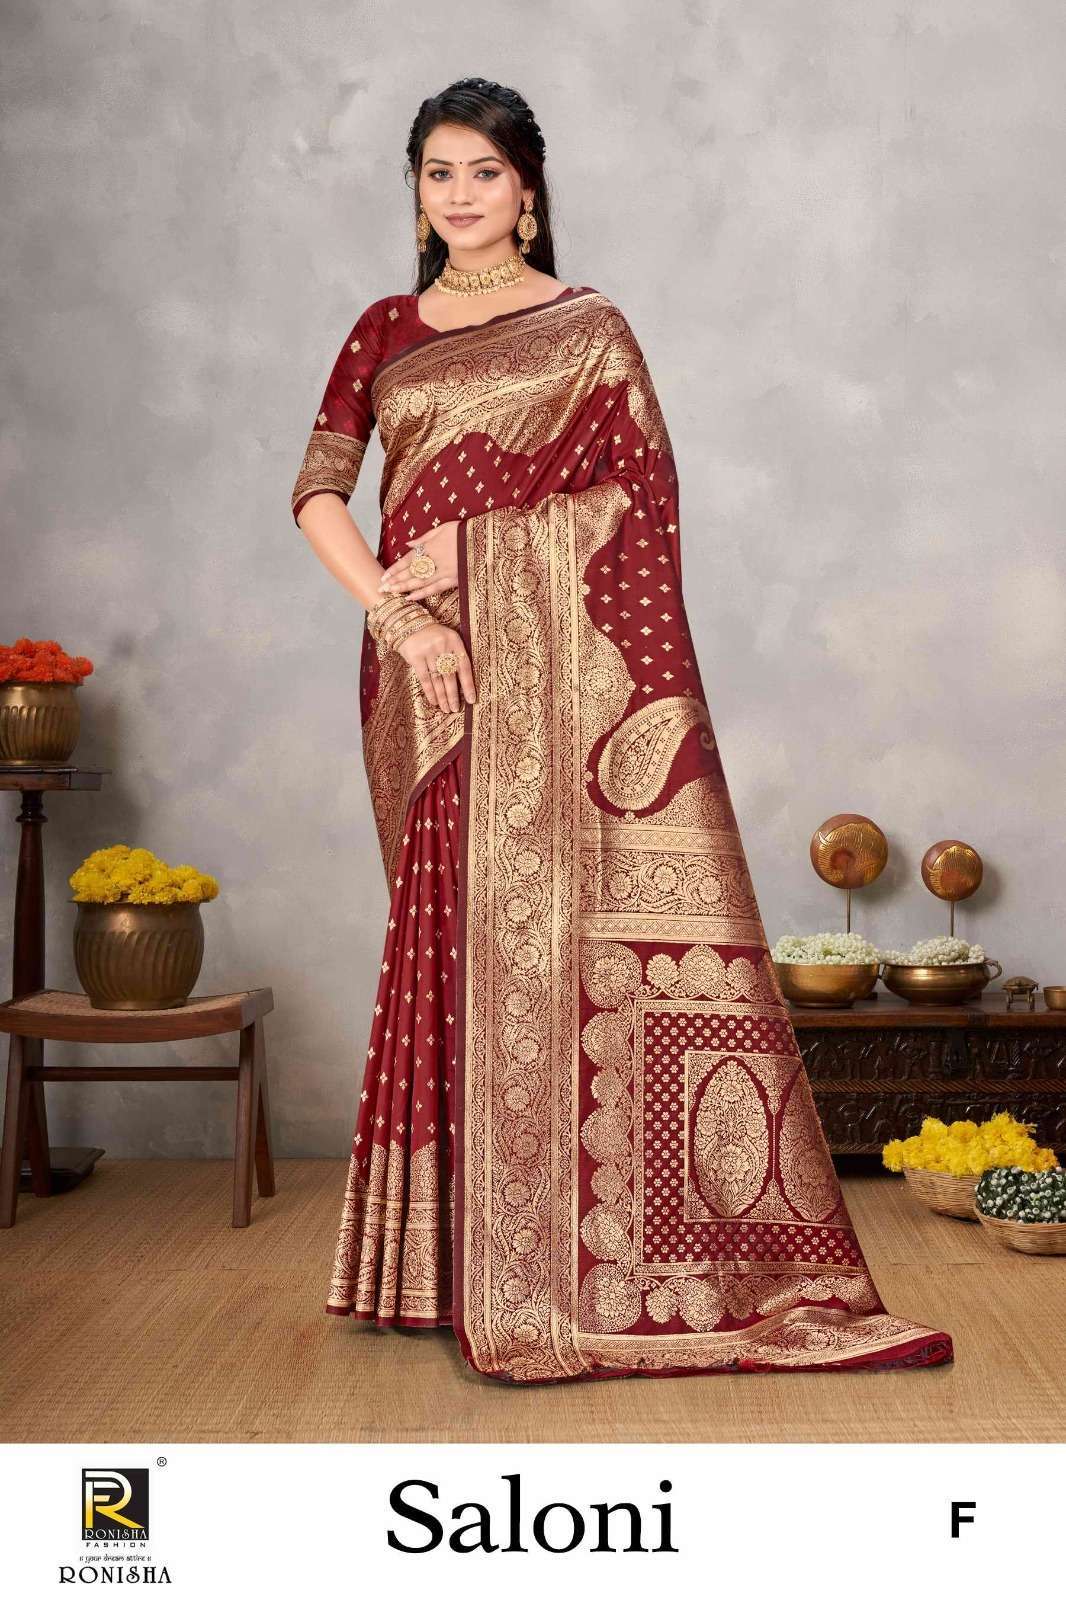 Ronisha Saloni Banarasi Silk Saree Wholesale Saree manufacturers india